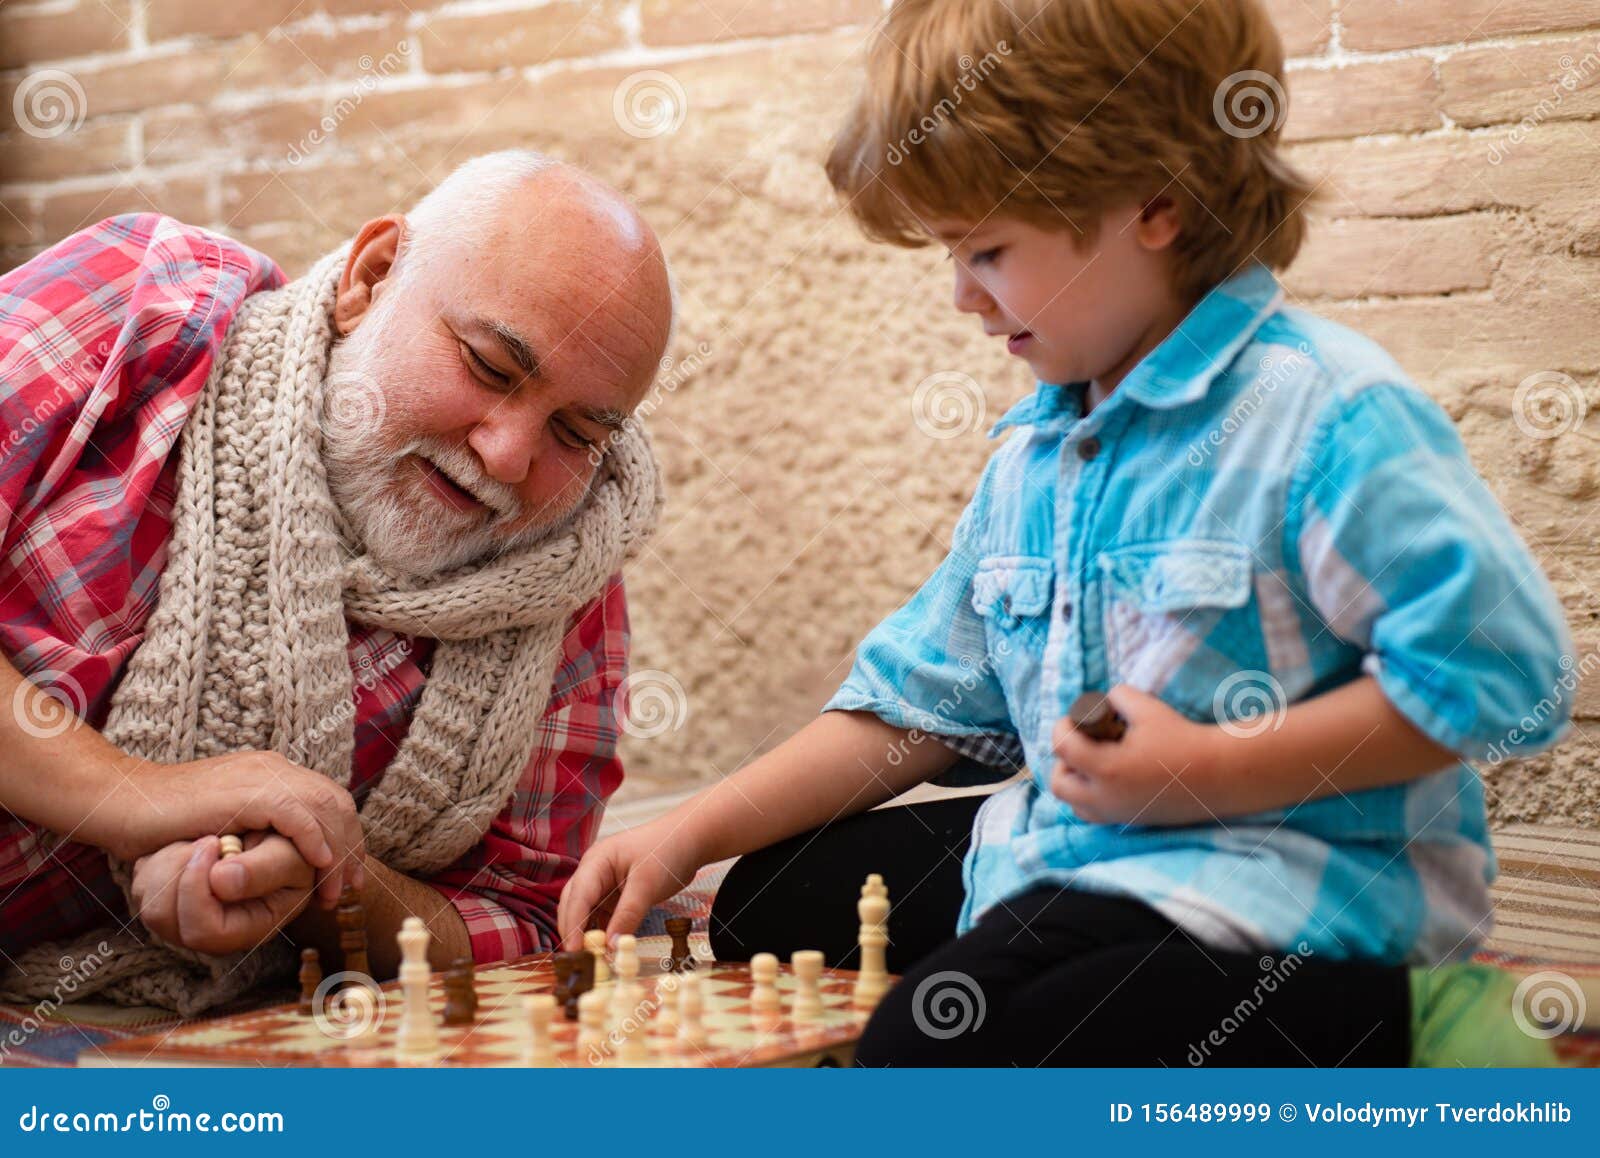 Дед с внуком играют в шашки. Дедушка с шахматами. Мальчик играет в шахматы с дедом. Дедушка и внук играют в шахматы дома. Дед шахматист.